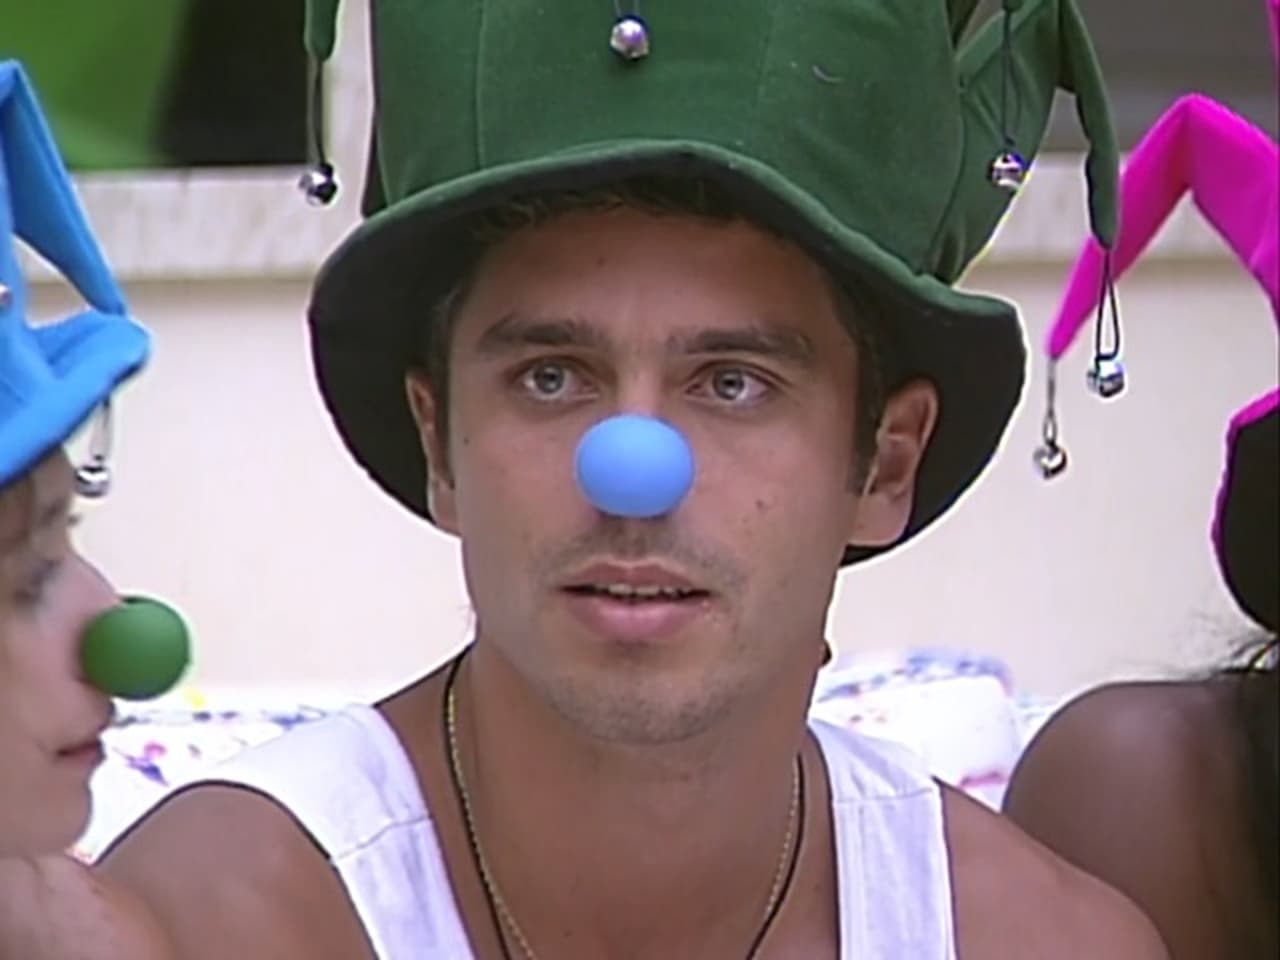 Big Brother Brasil - Season 4 Episode 24 : Episode 24